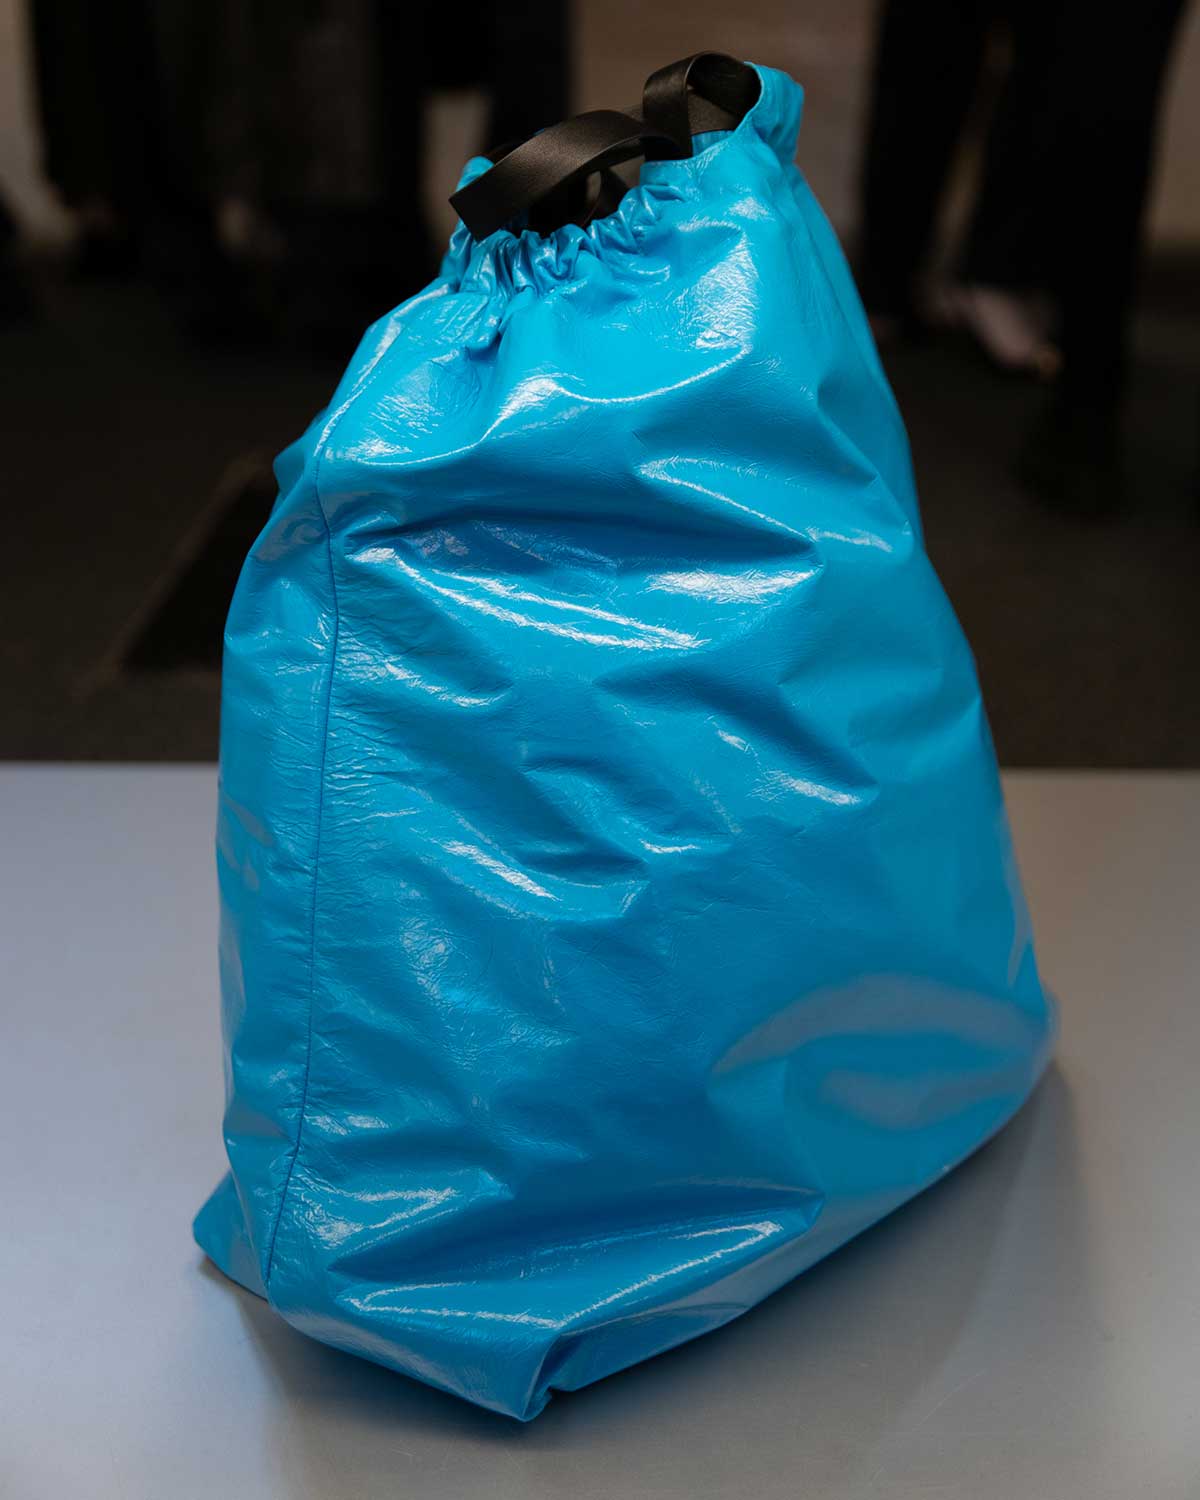 Balenciaga's Trash-Bag Pouch Inspires Social Media Reactions